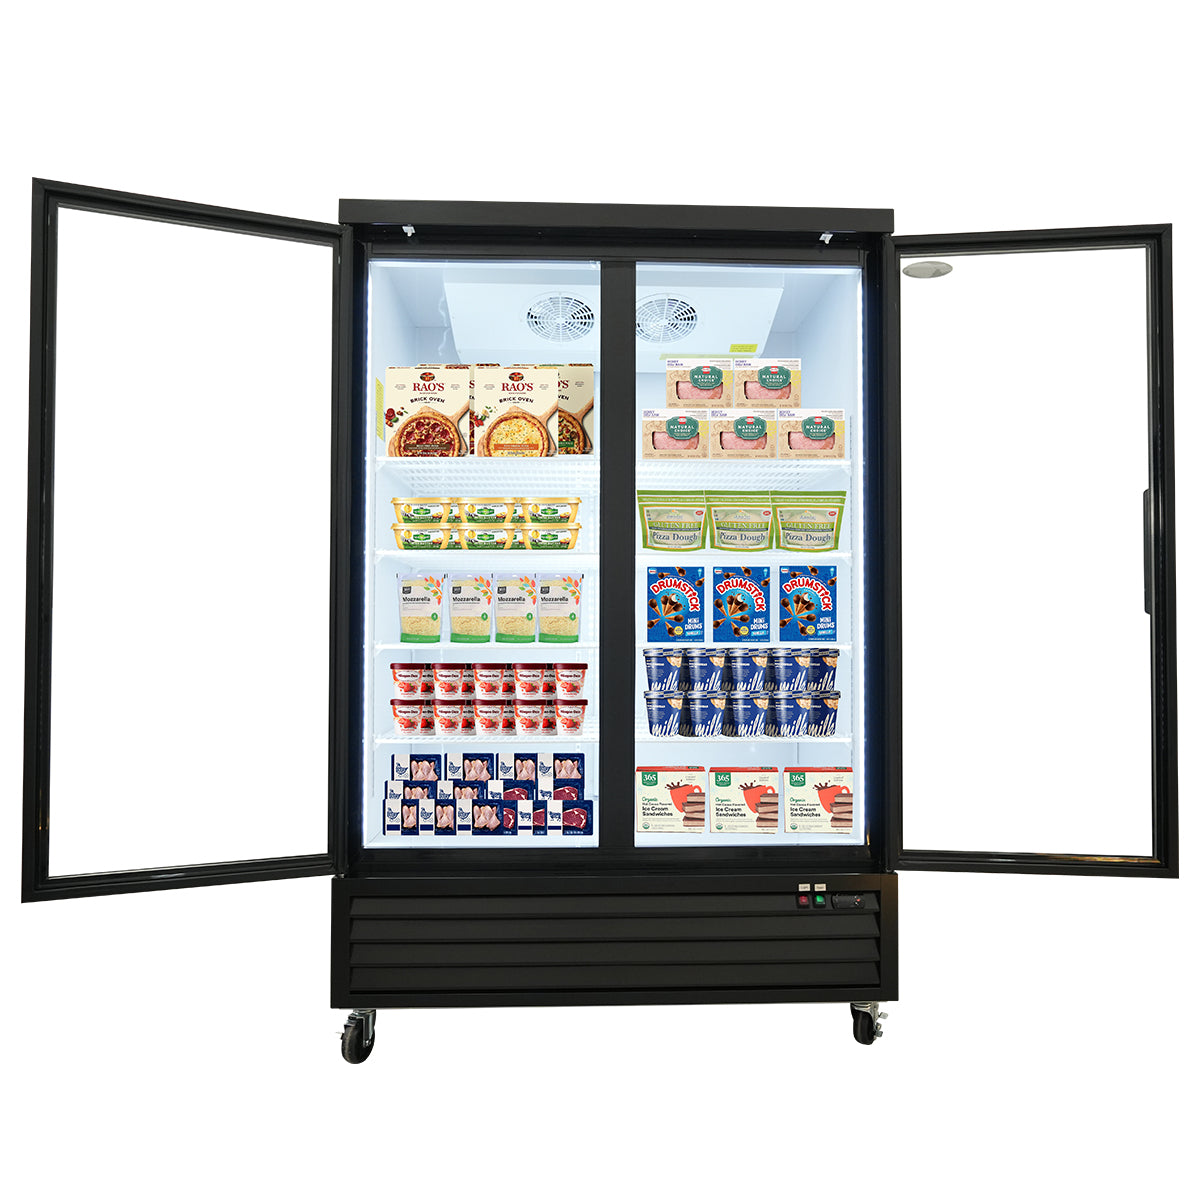 ORIKOOL SD1390FT 54" Double Swing Glass Door Merchandiser Freezer 44.7 cu.ft. Commercial Freezer, Black